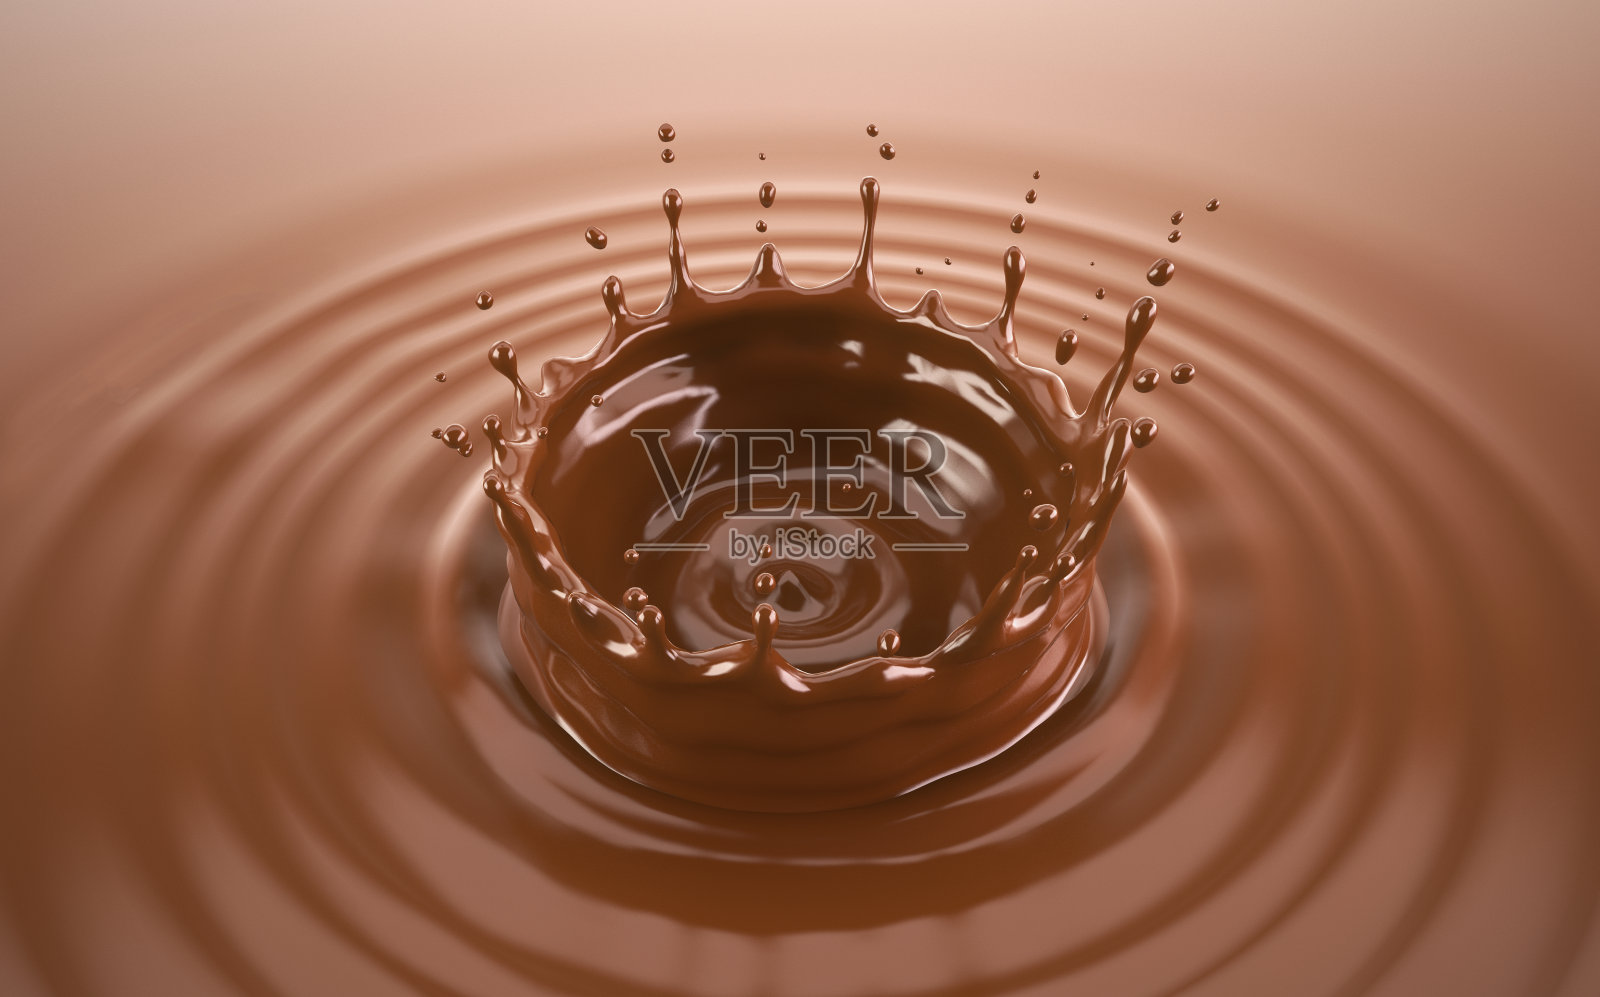 液体巧克力皇冠溅起涟漪照片摄影图片